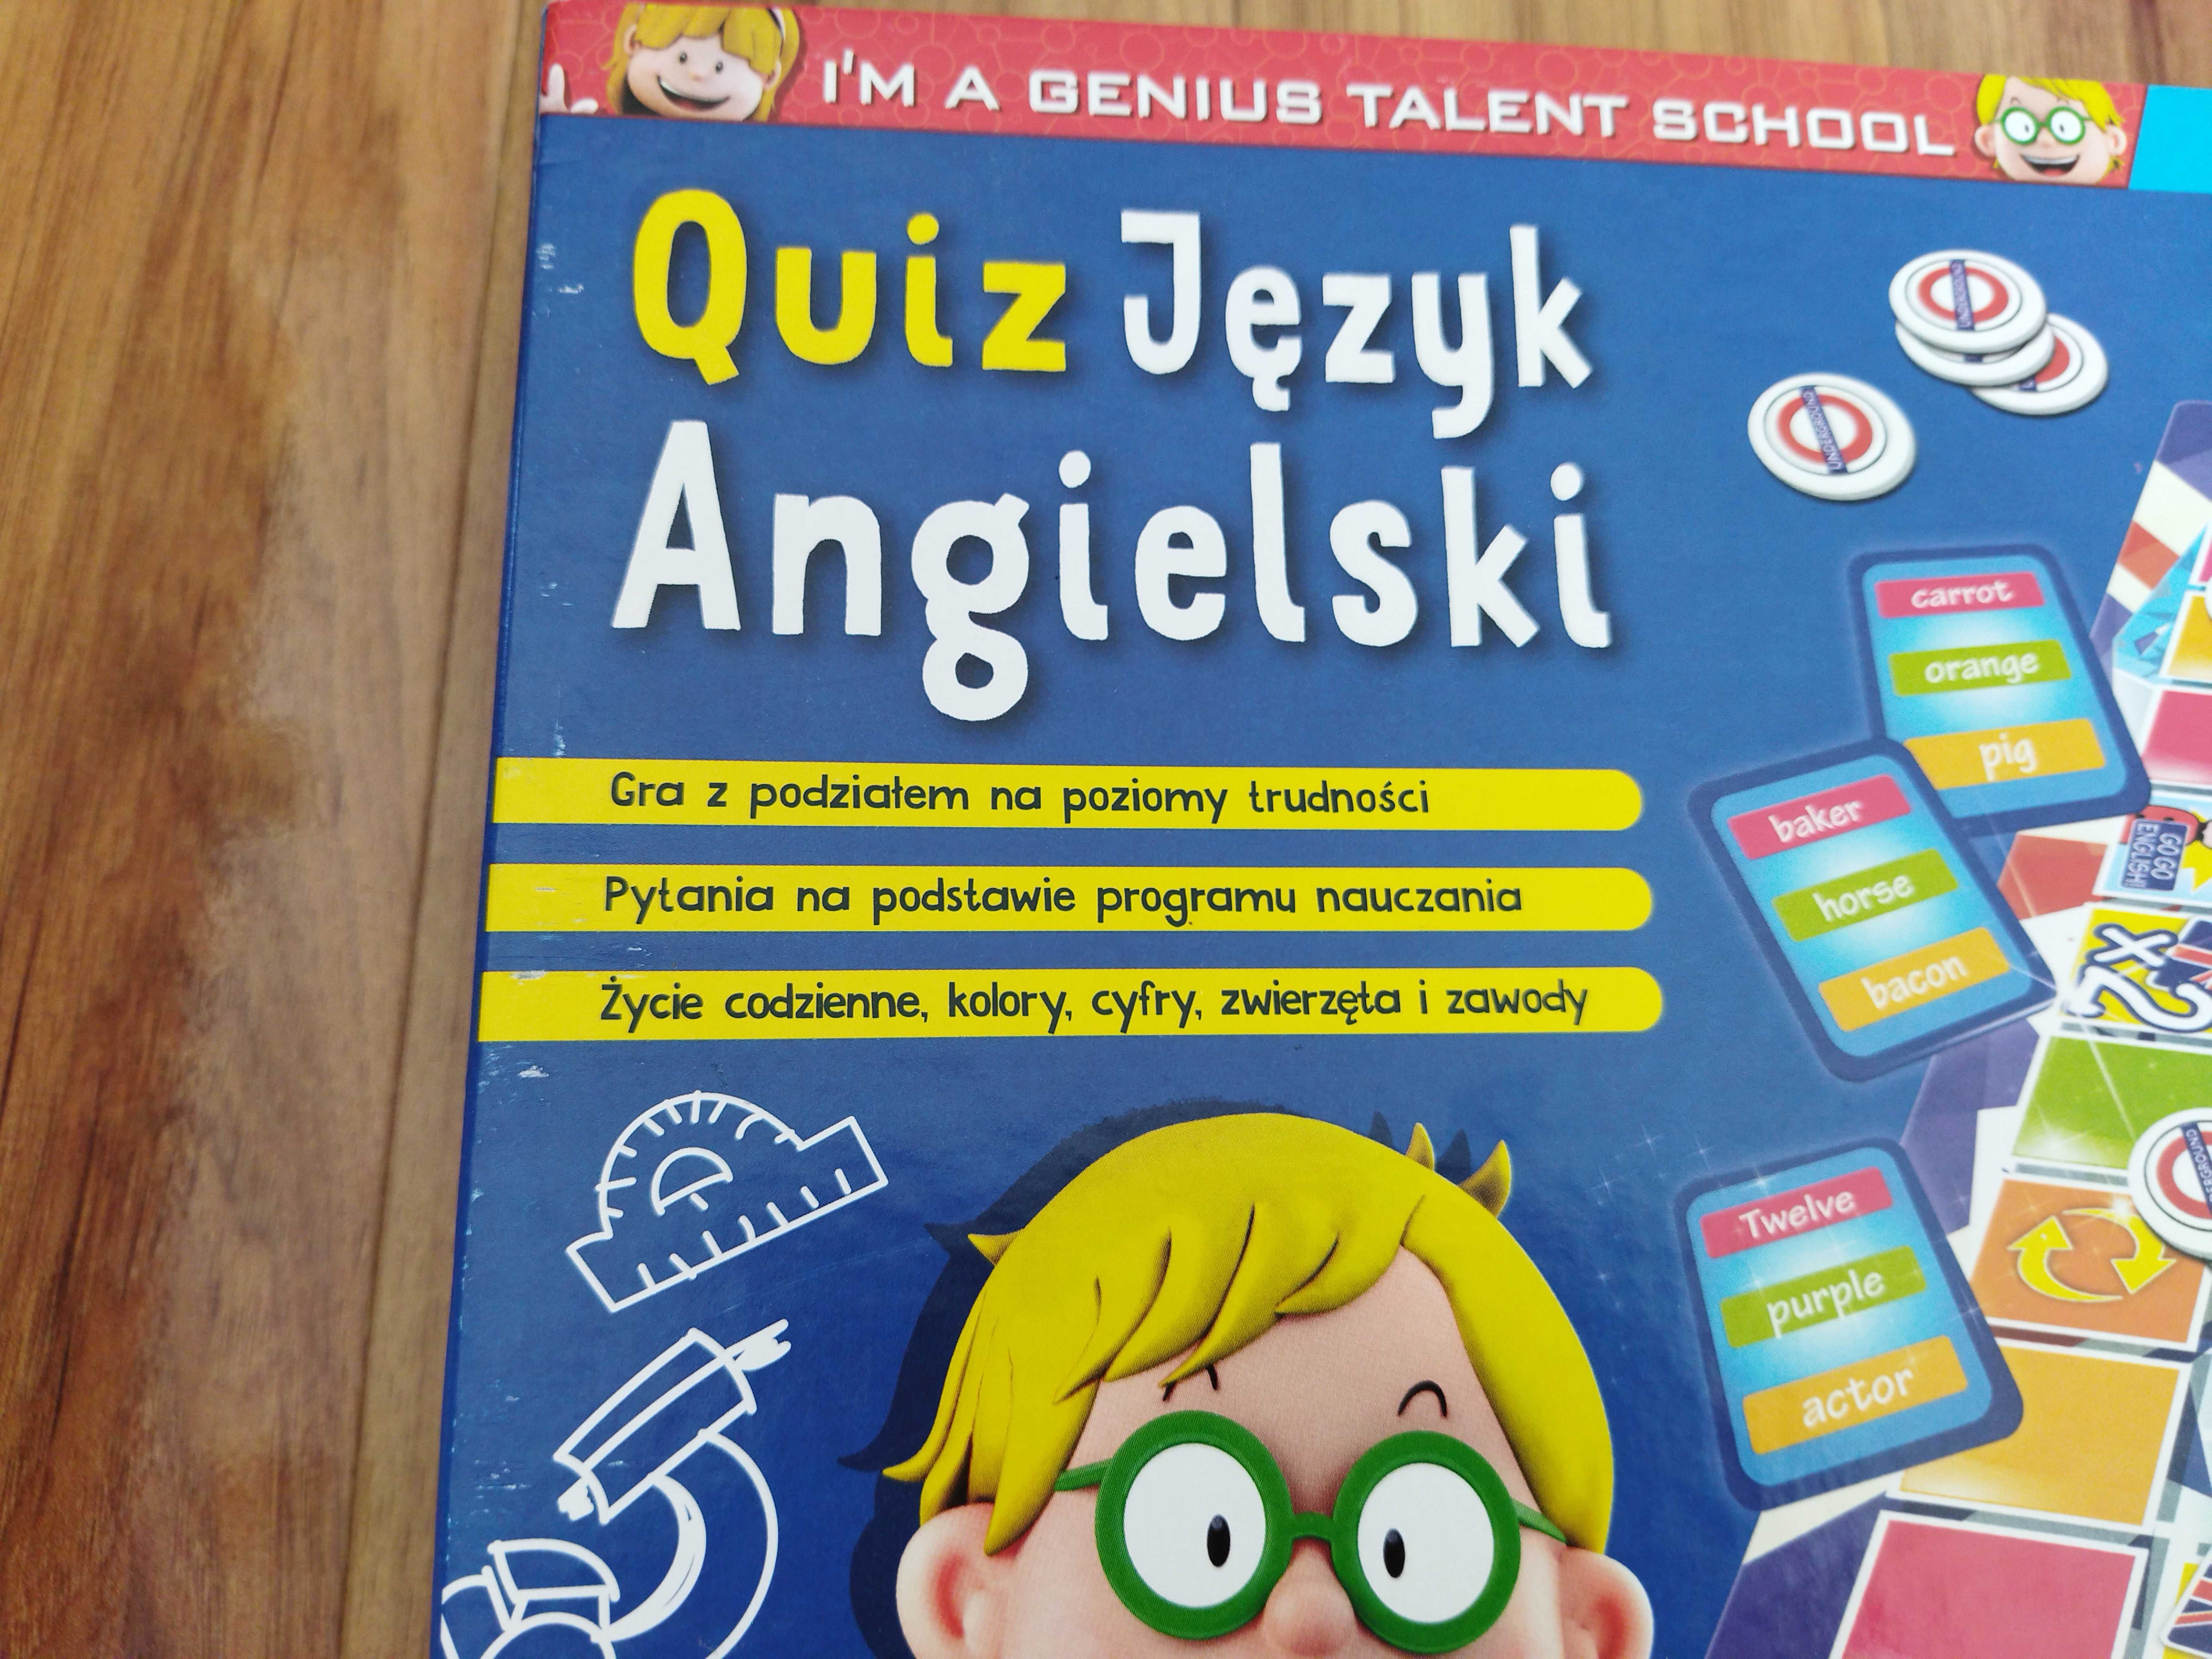 Gra planszowa Quiz Język angielski I'm a genius talent school